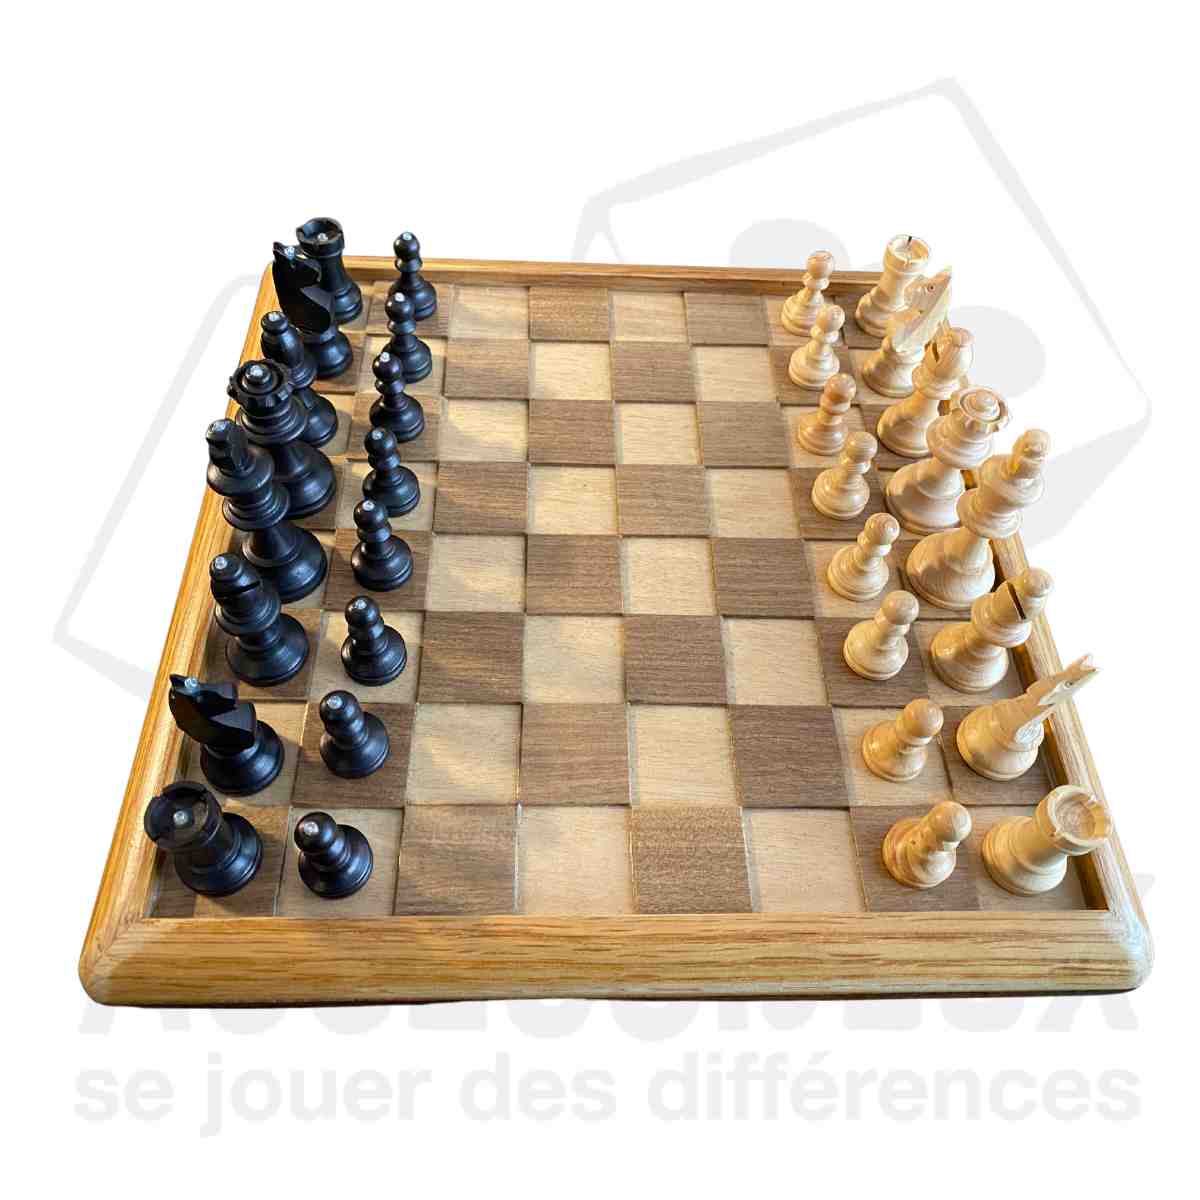 Jeu De Pierres Magnétiques, Jeu D'échecs Magnétique, Jeu De Galets